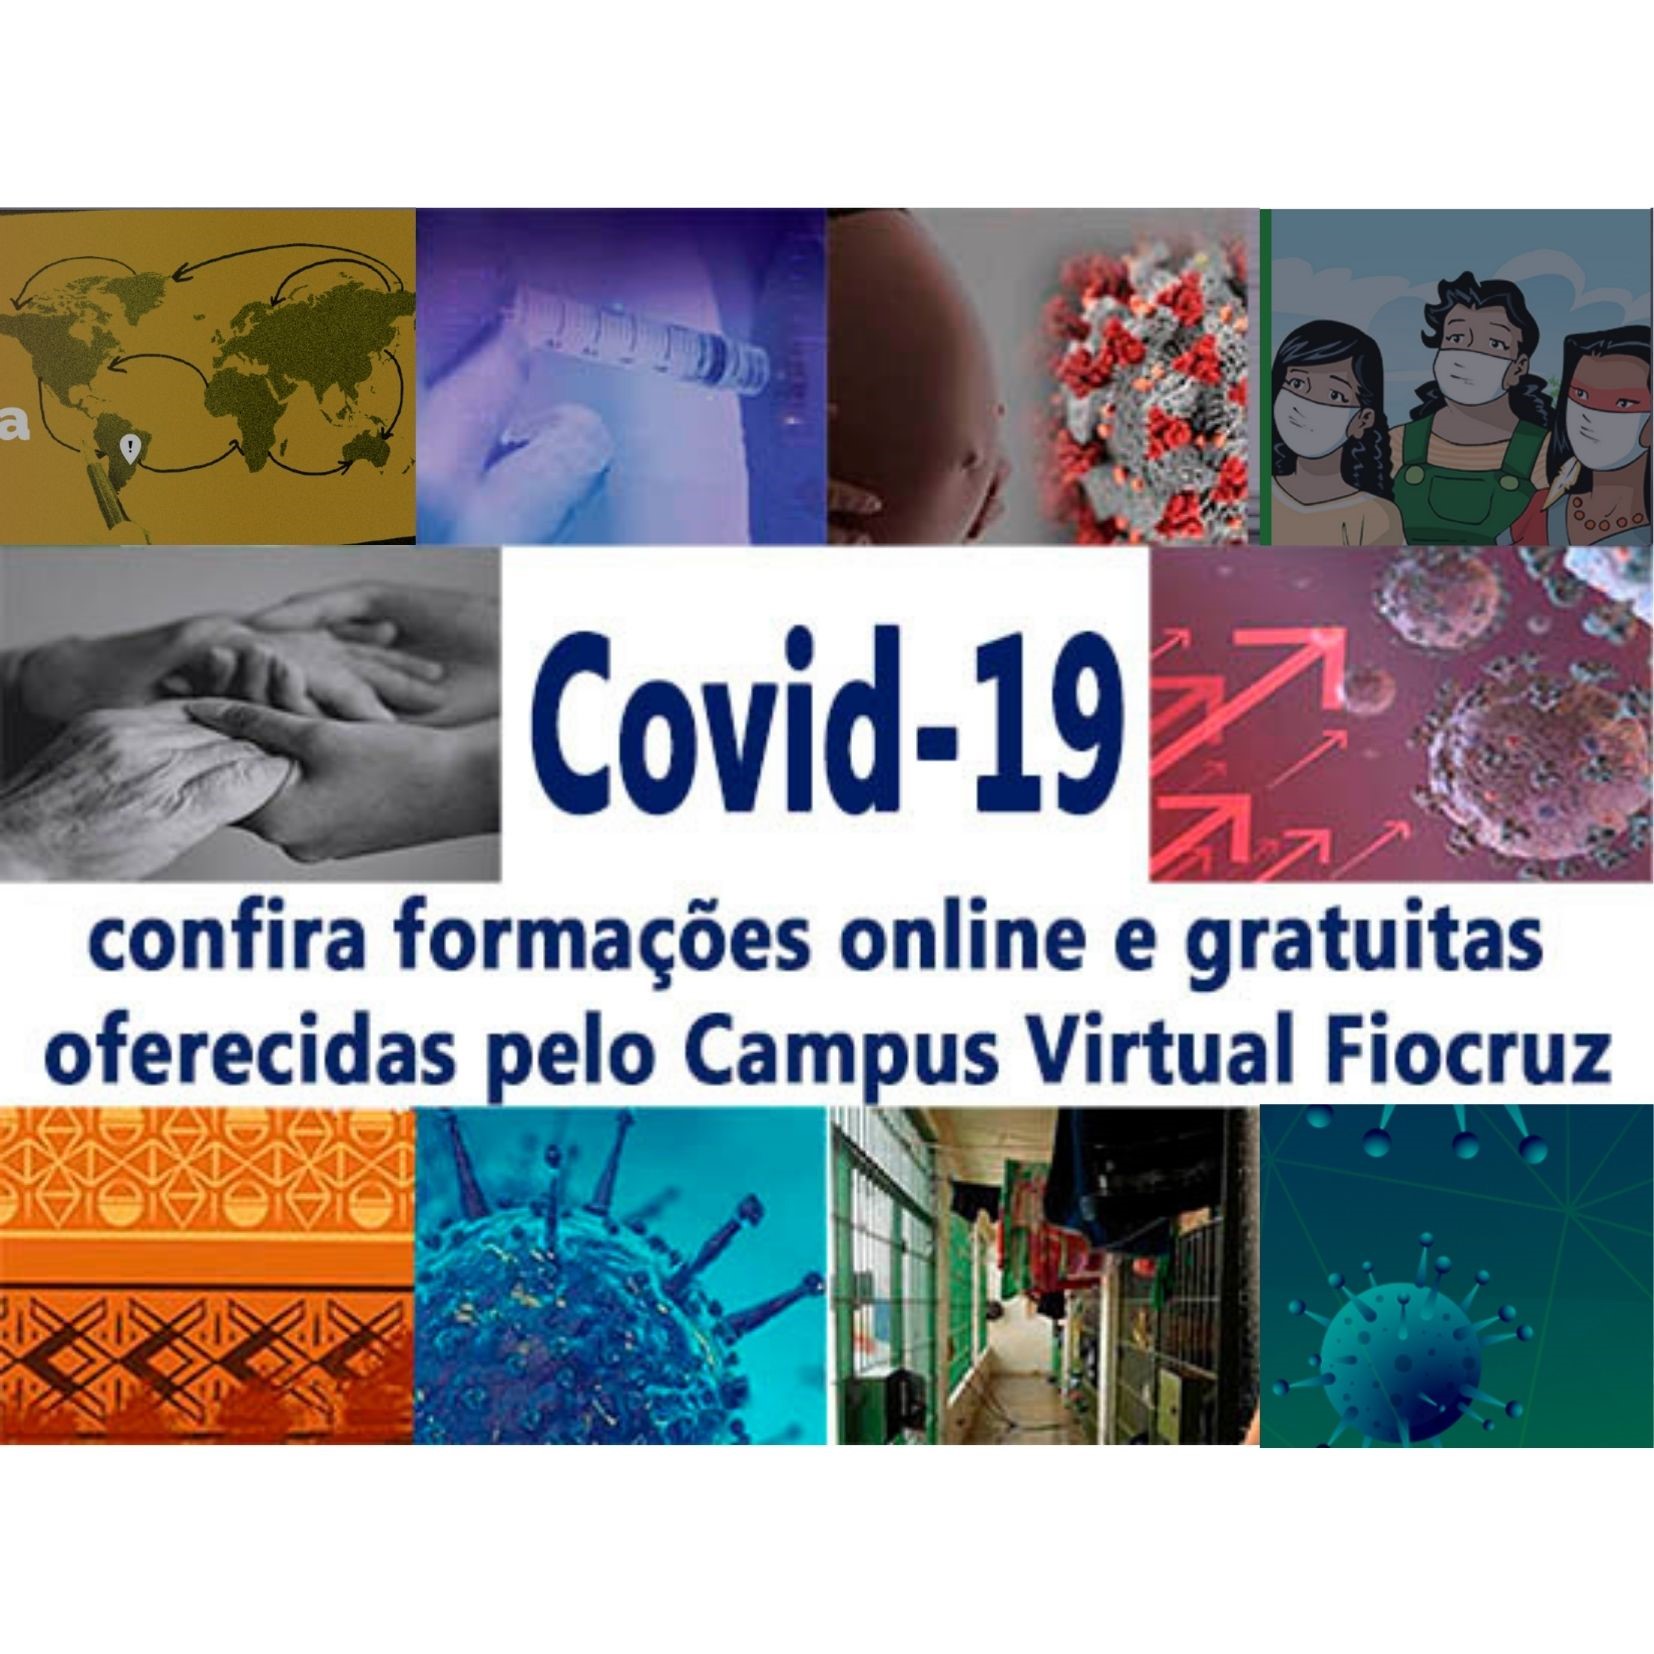 Cursos gratuitos e online sobre a Covid-19: aproveite as férias e o recesso para se qualificar